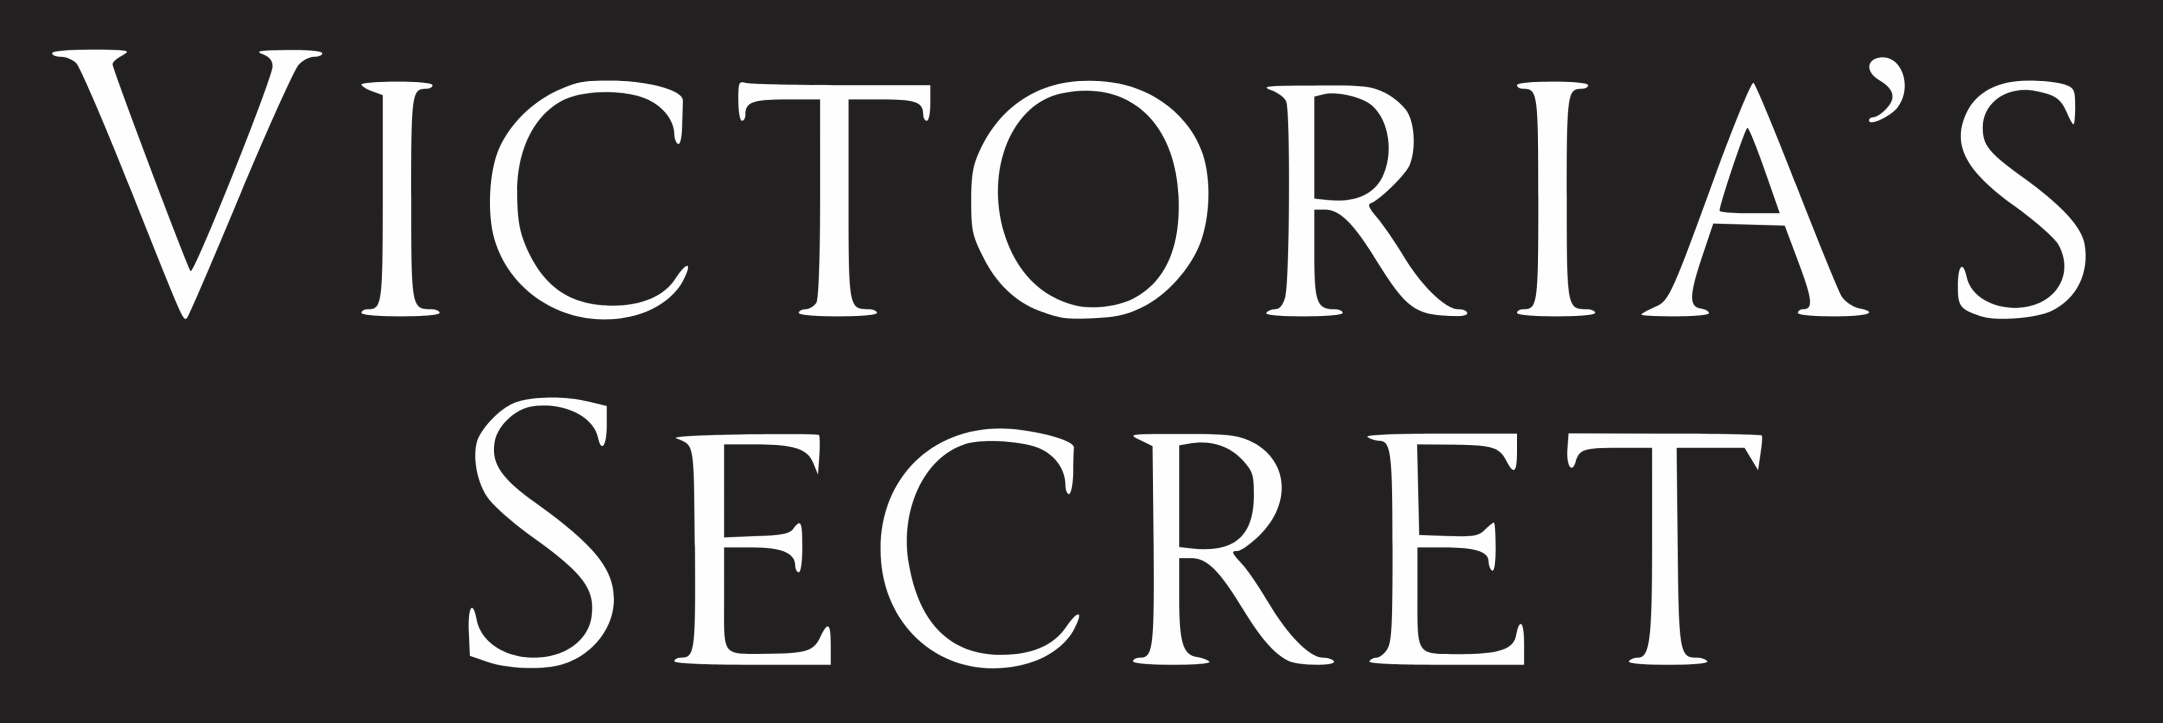 לוגו סודי של ויקטוריאס